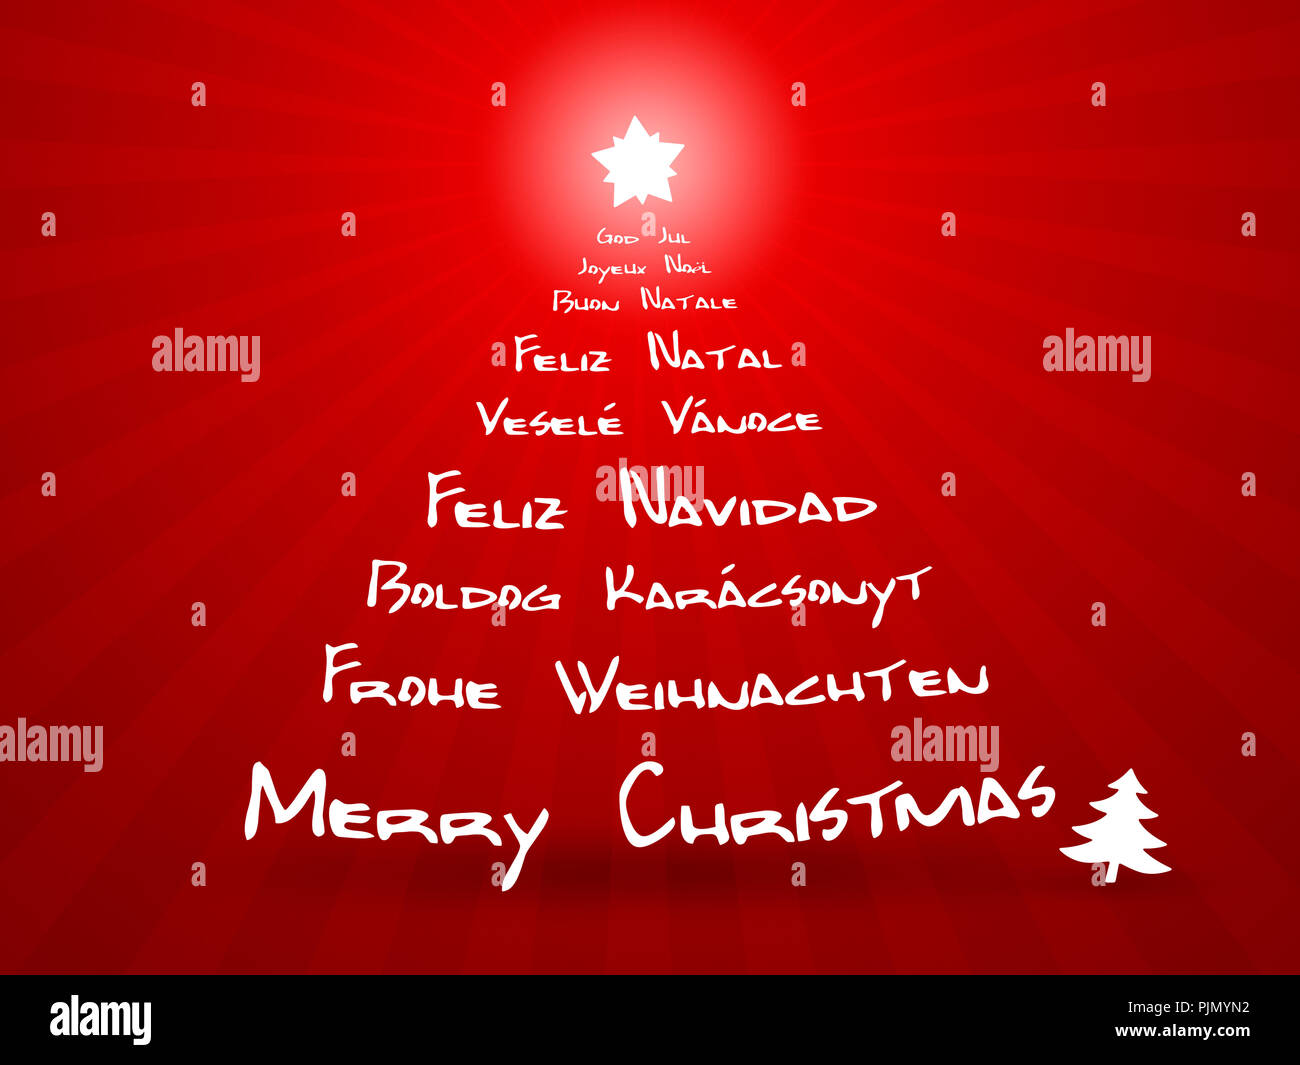 Buon Natale In Lingue Diverse.Una Immagine Di Buon Natale In Diverse Lingue Foto Stock Alamy